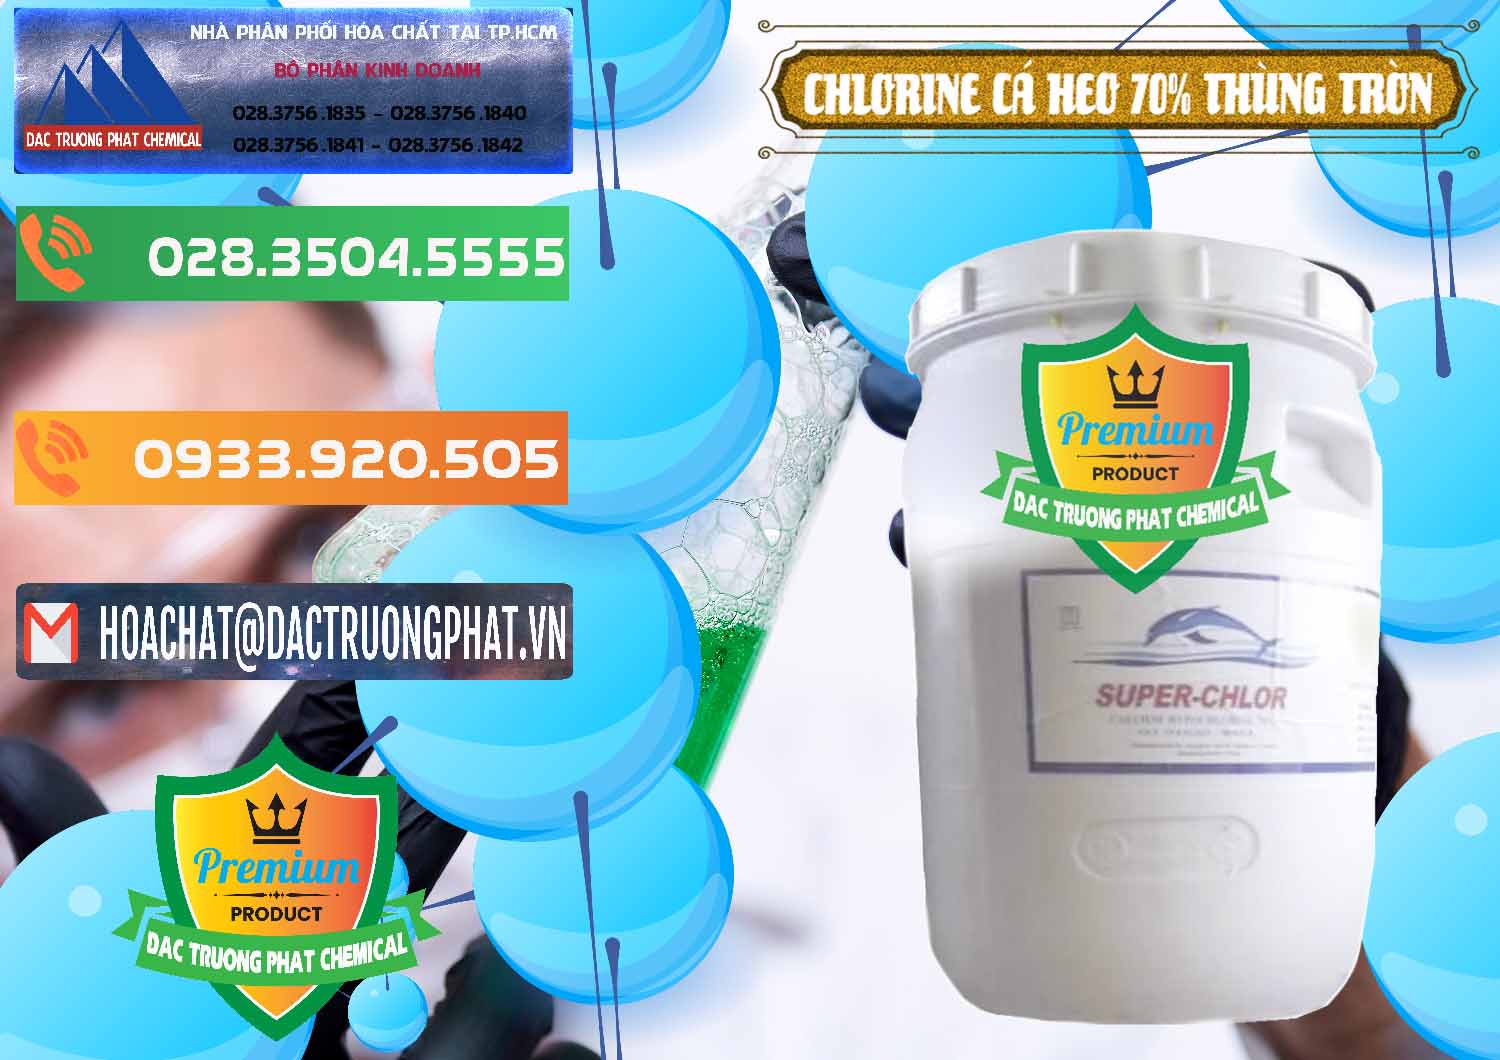 Công ty phân phối và bán Clorin - Chlorine Cá Heo 70% Super Chlor Thùng Tròn Nắp Trắng Trung Quốc China - 0239 - Bán và phân phối hóa chất tại TP.HCM - hoachatxulynuoc.com.vn